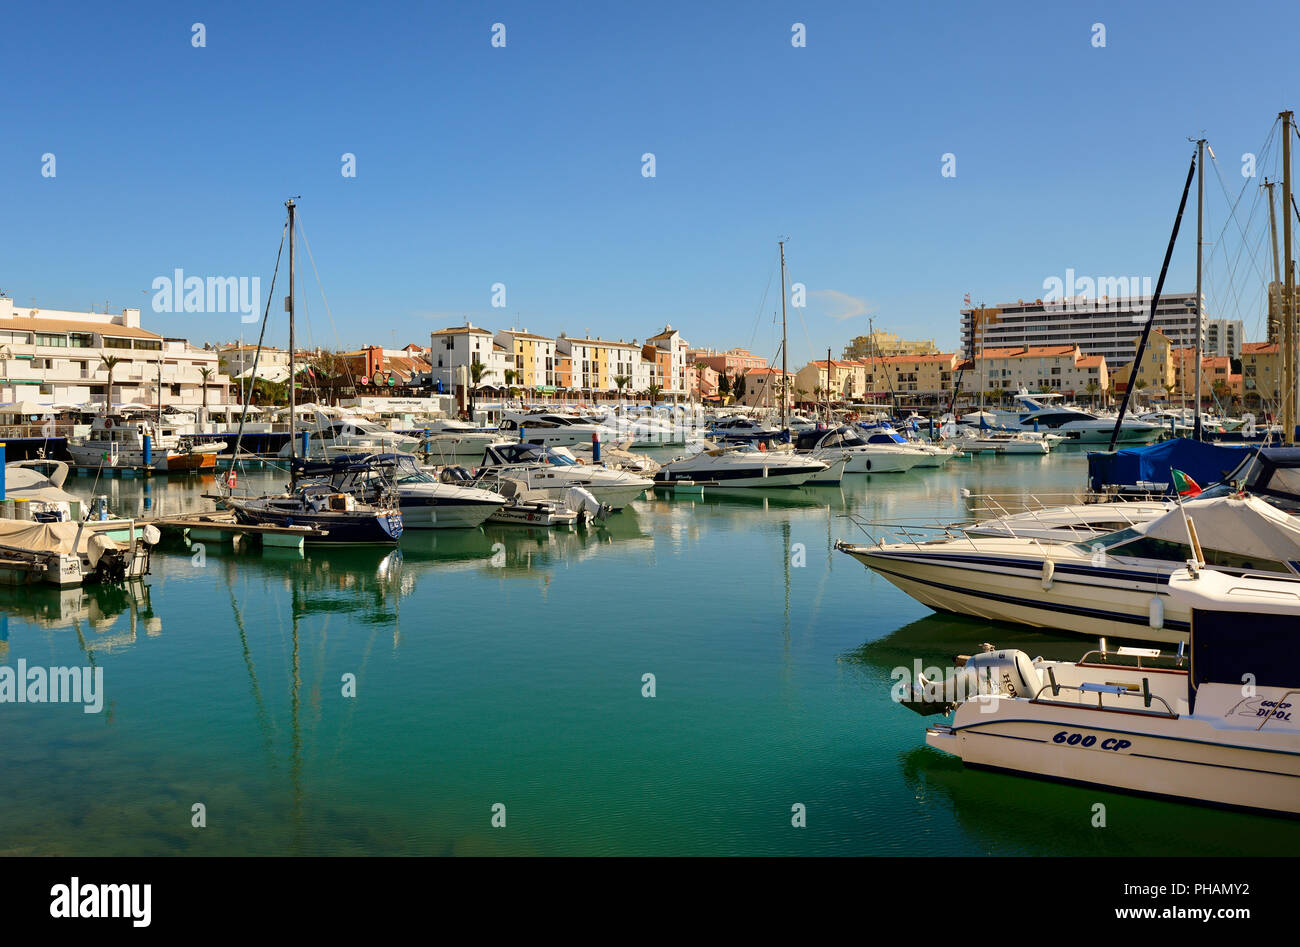 The marina of Vilamoura. Algarve, Portugal Stock Photo